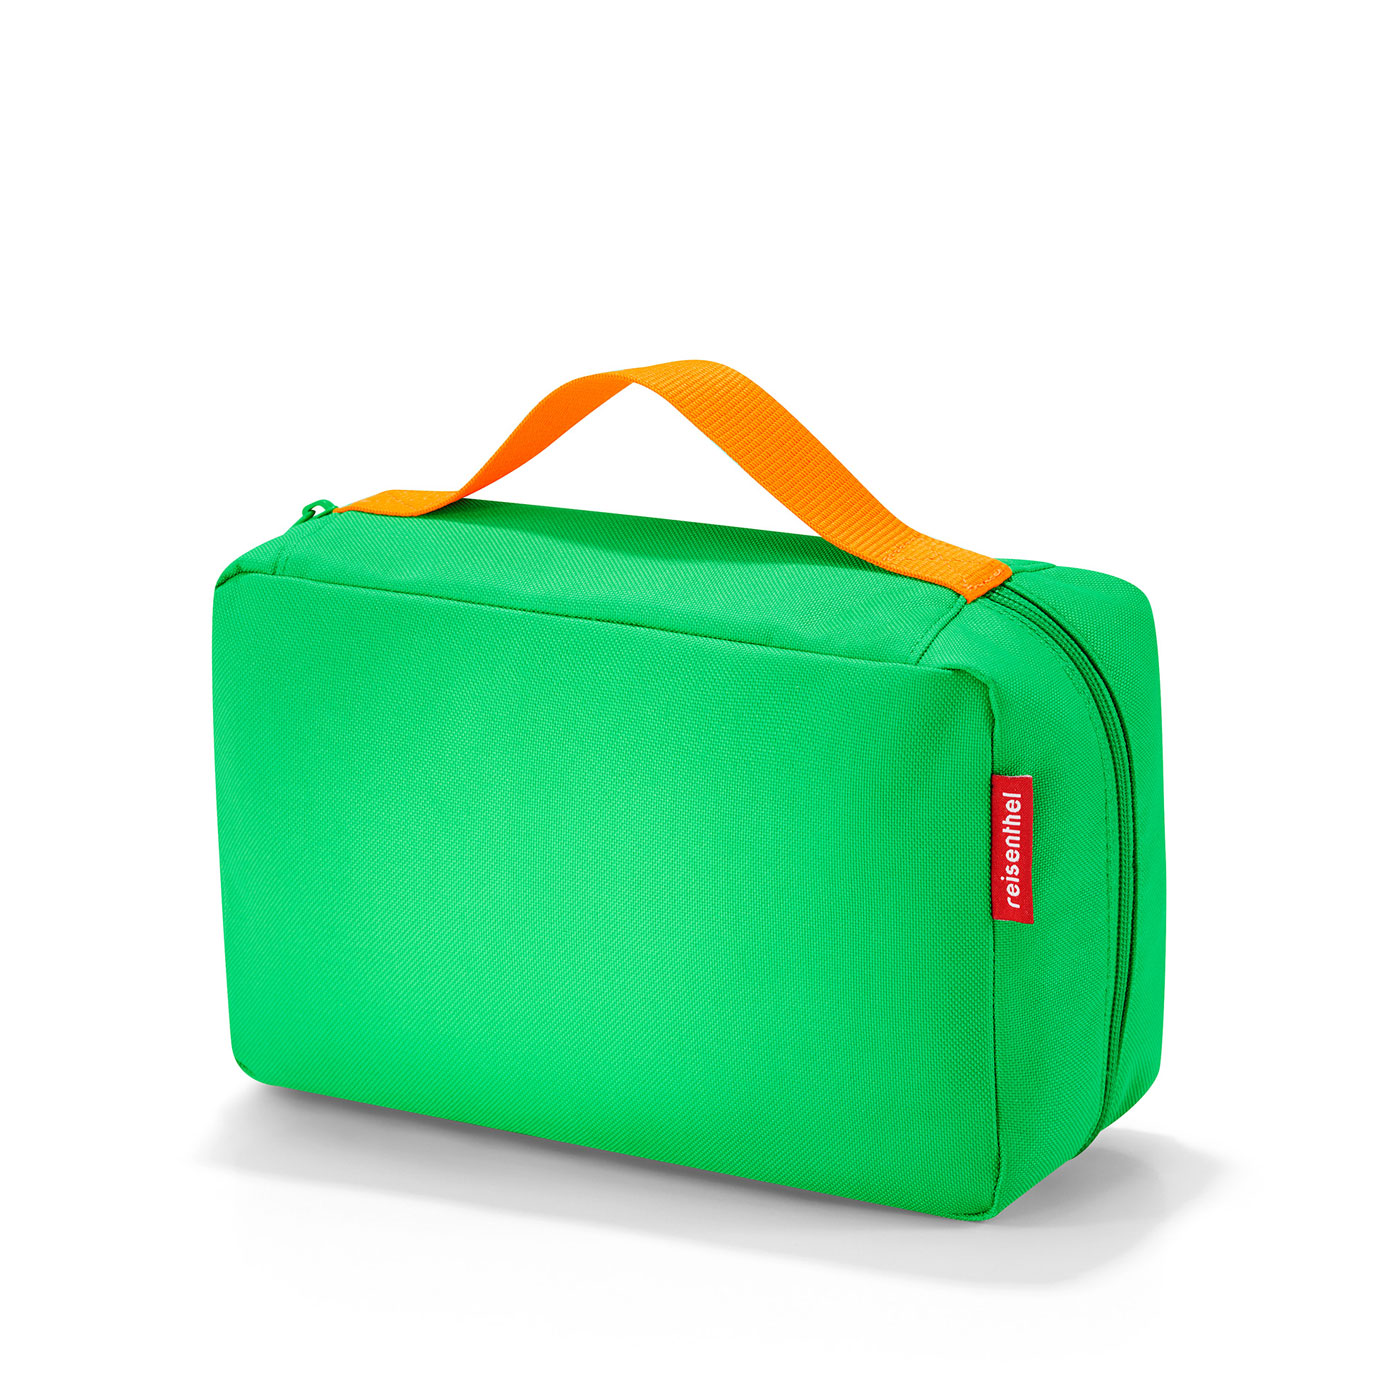 Reisenthel Kids Babycase Wickeltasche summer green | jetzt online kaufen  auf Koffer.de ✓